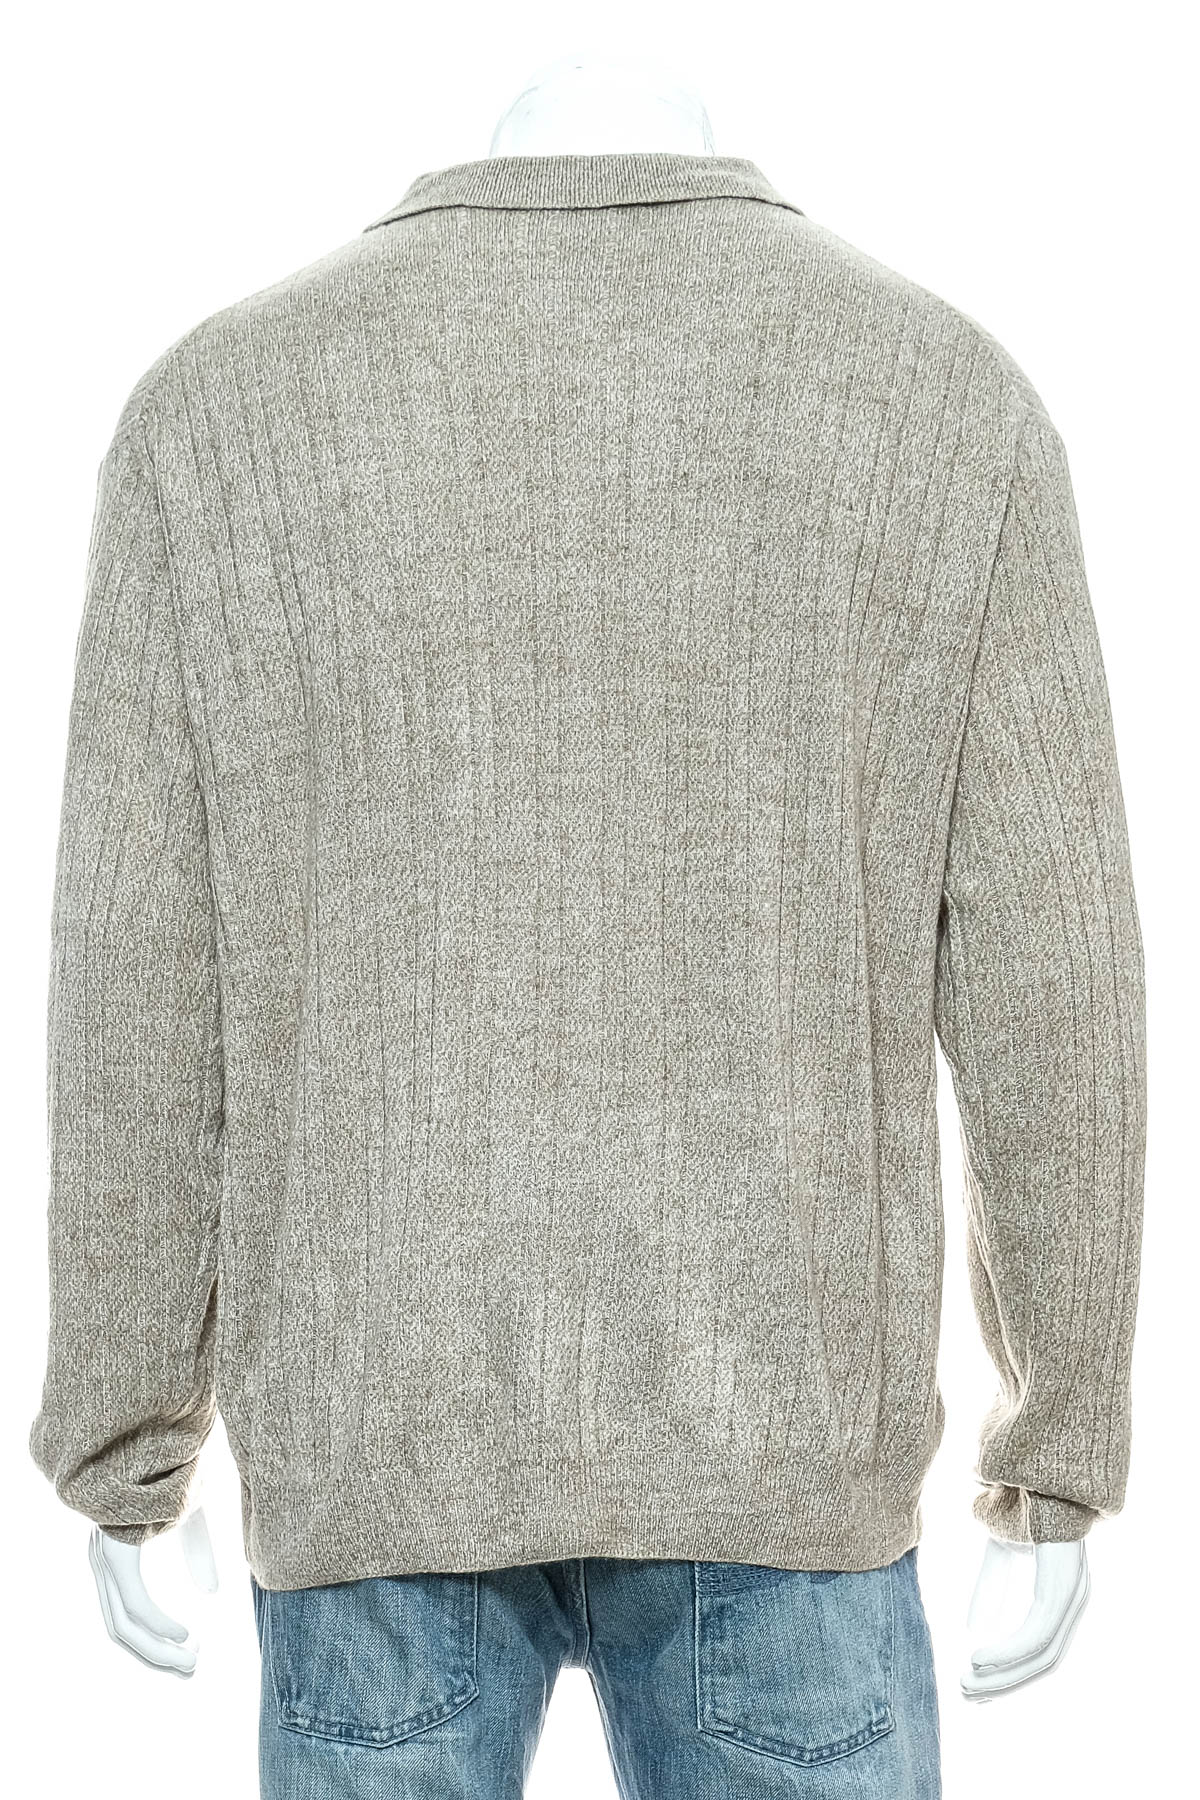 Men's sweater - GEOFFREY BEENE - 1